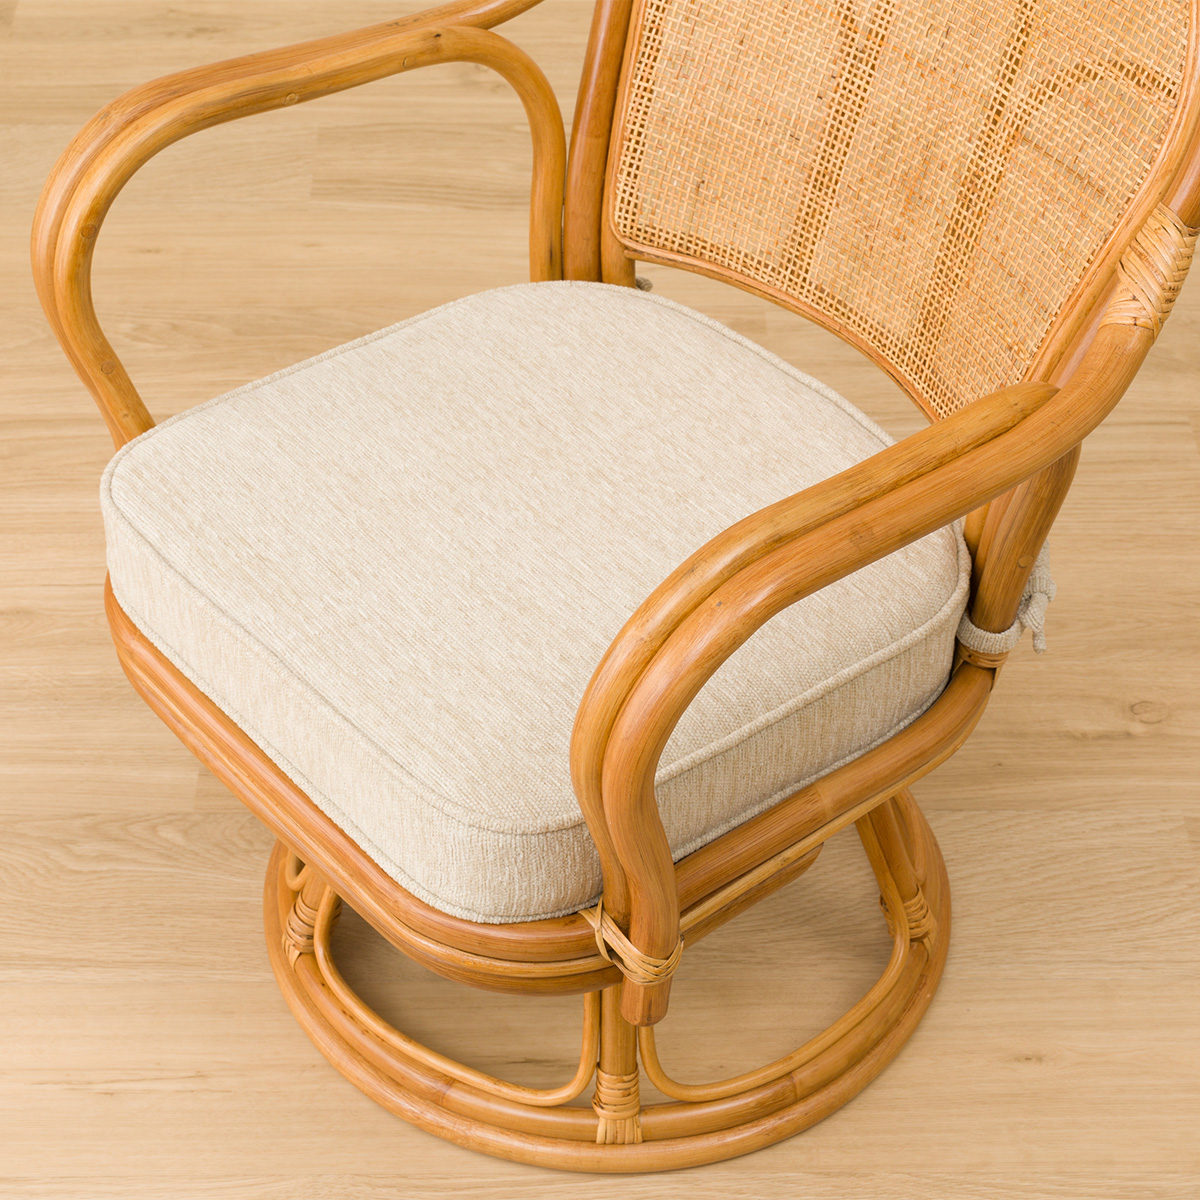 おすすめの籐椅子人気比較ランキング ニトリも モノナビ おすすめの家具 家電のランキング